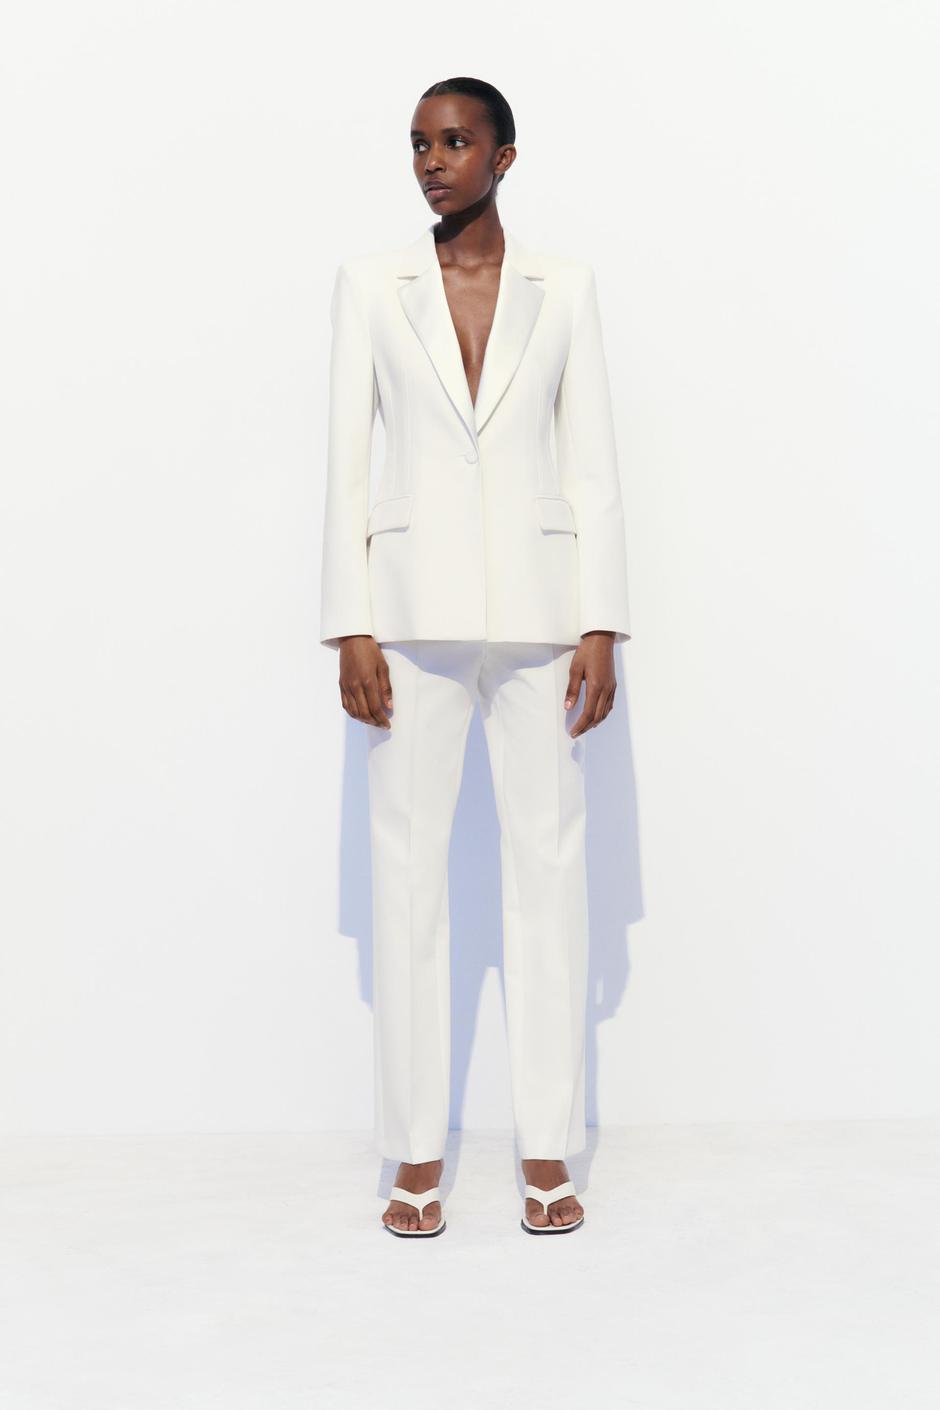 Foto: Zara, bijelo odijelo ( sako 55,95 eura, hlače 35,95 eura) | Autor: Zara